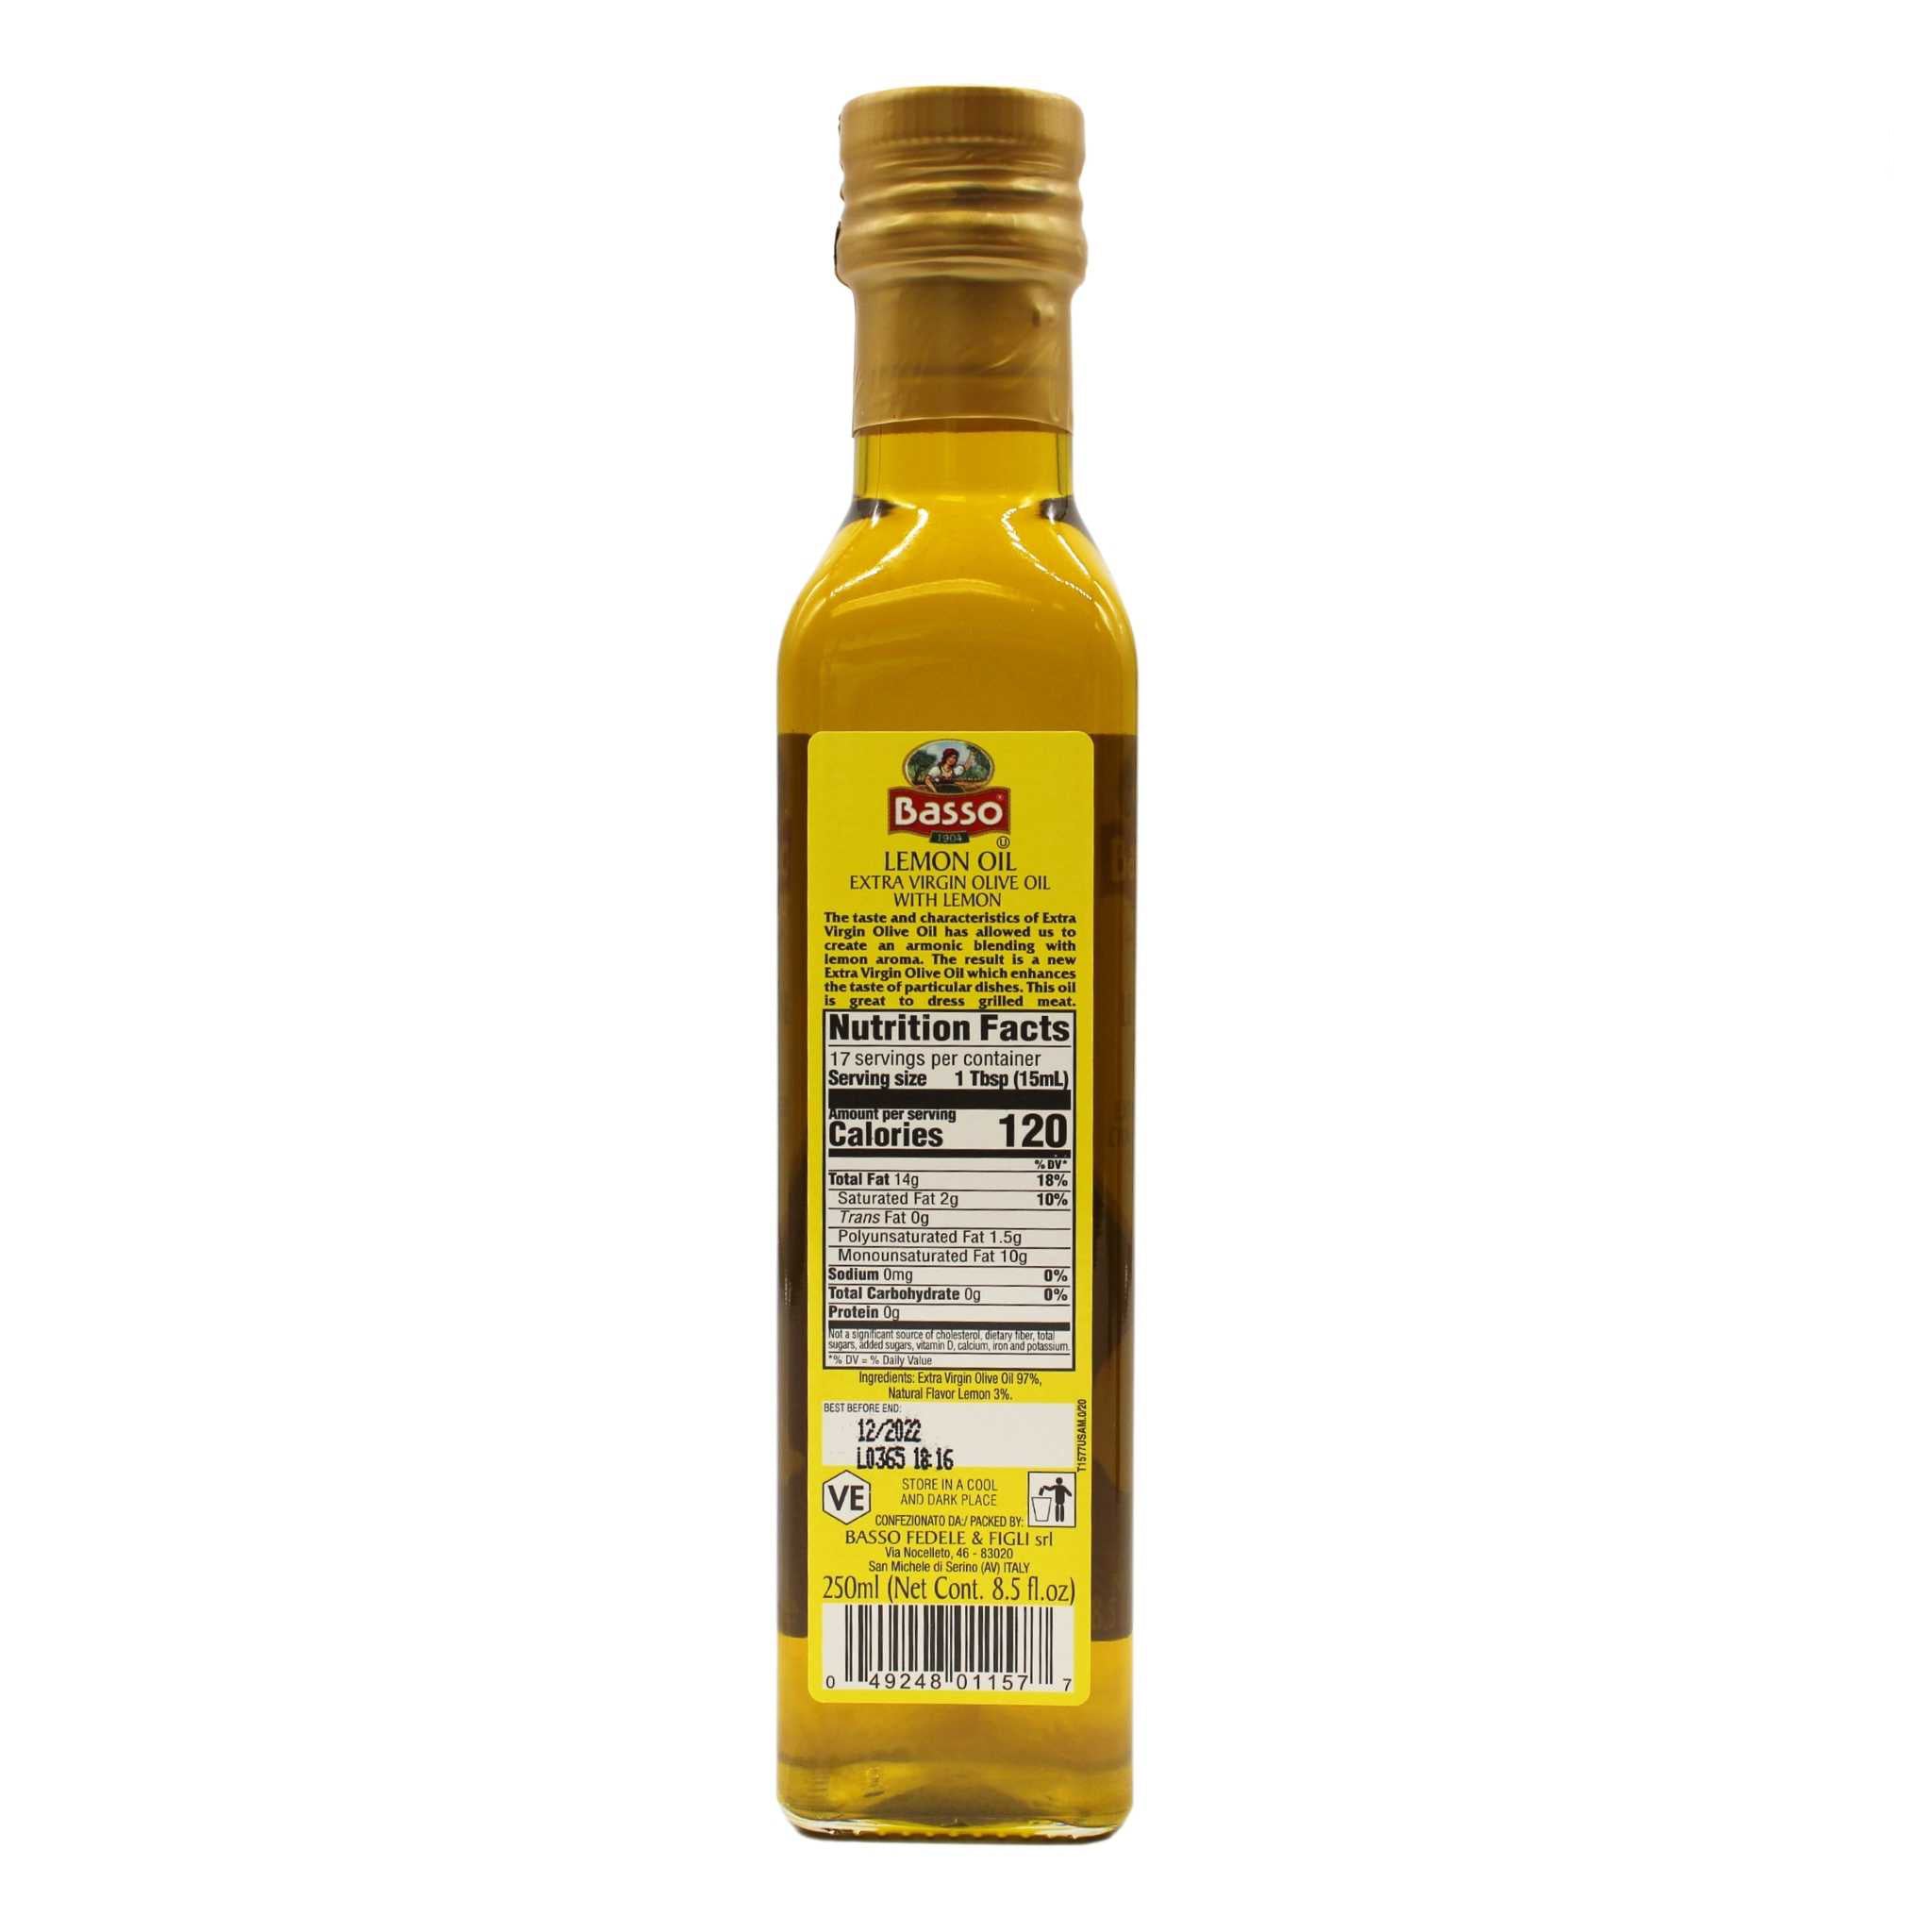 16 oz. Olive Oil Bottle Set